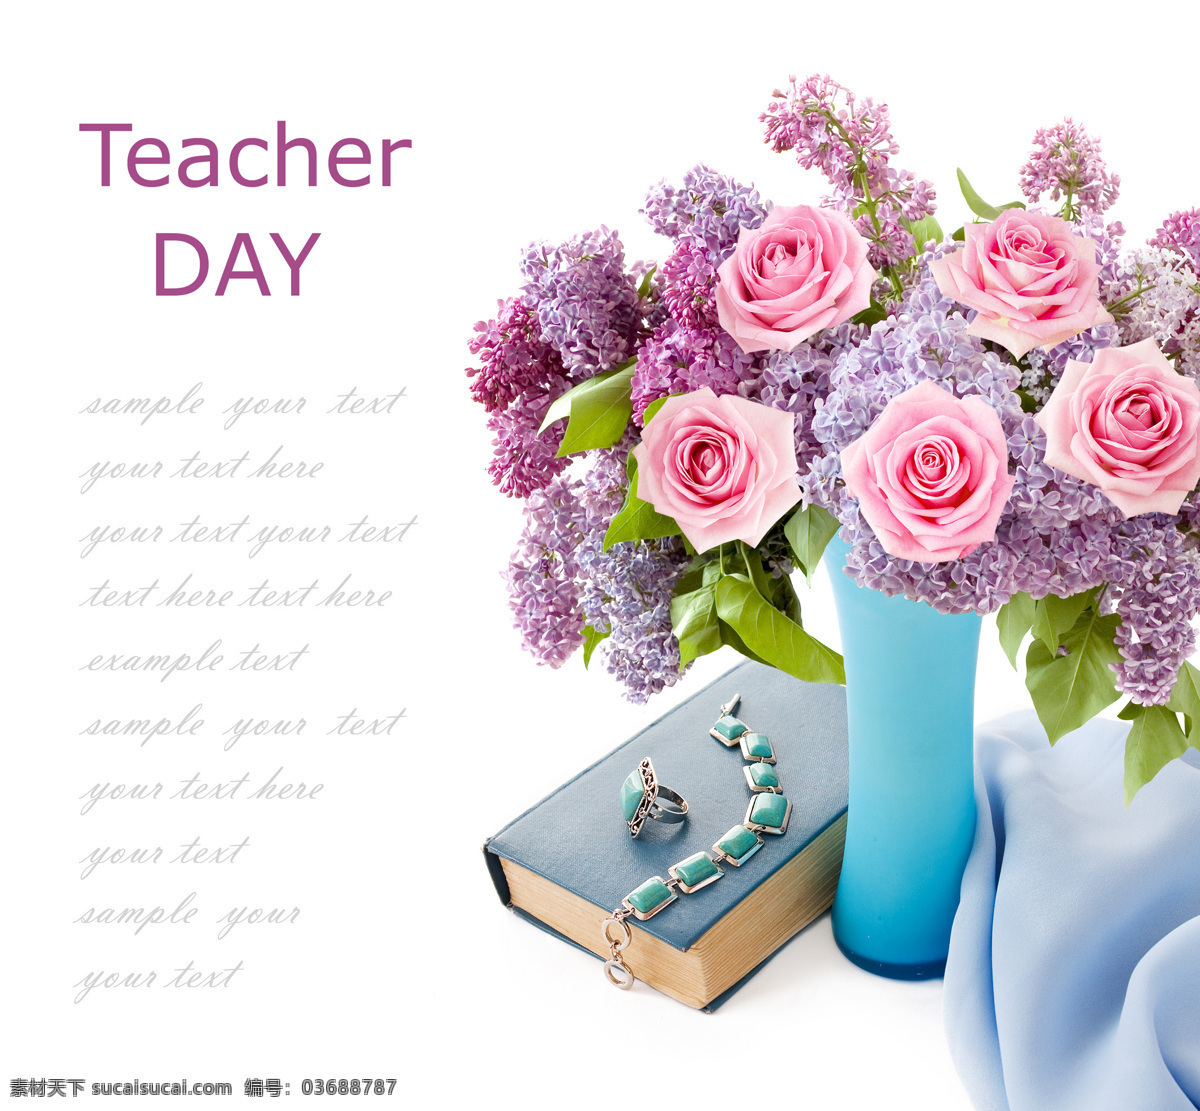 教师节 素材图片 教师节鲜花 美丽鲜花 花朵 玫瑰花 书本 花瓶 花草树木 生物世界